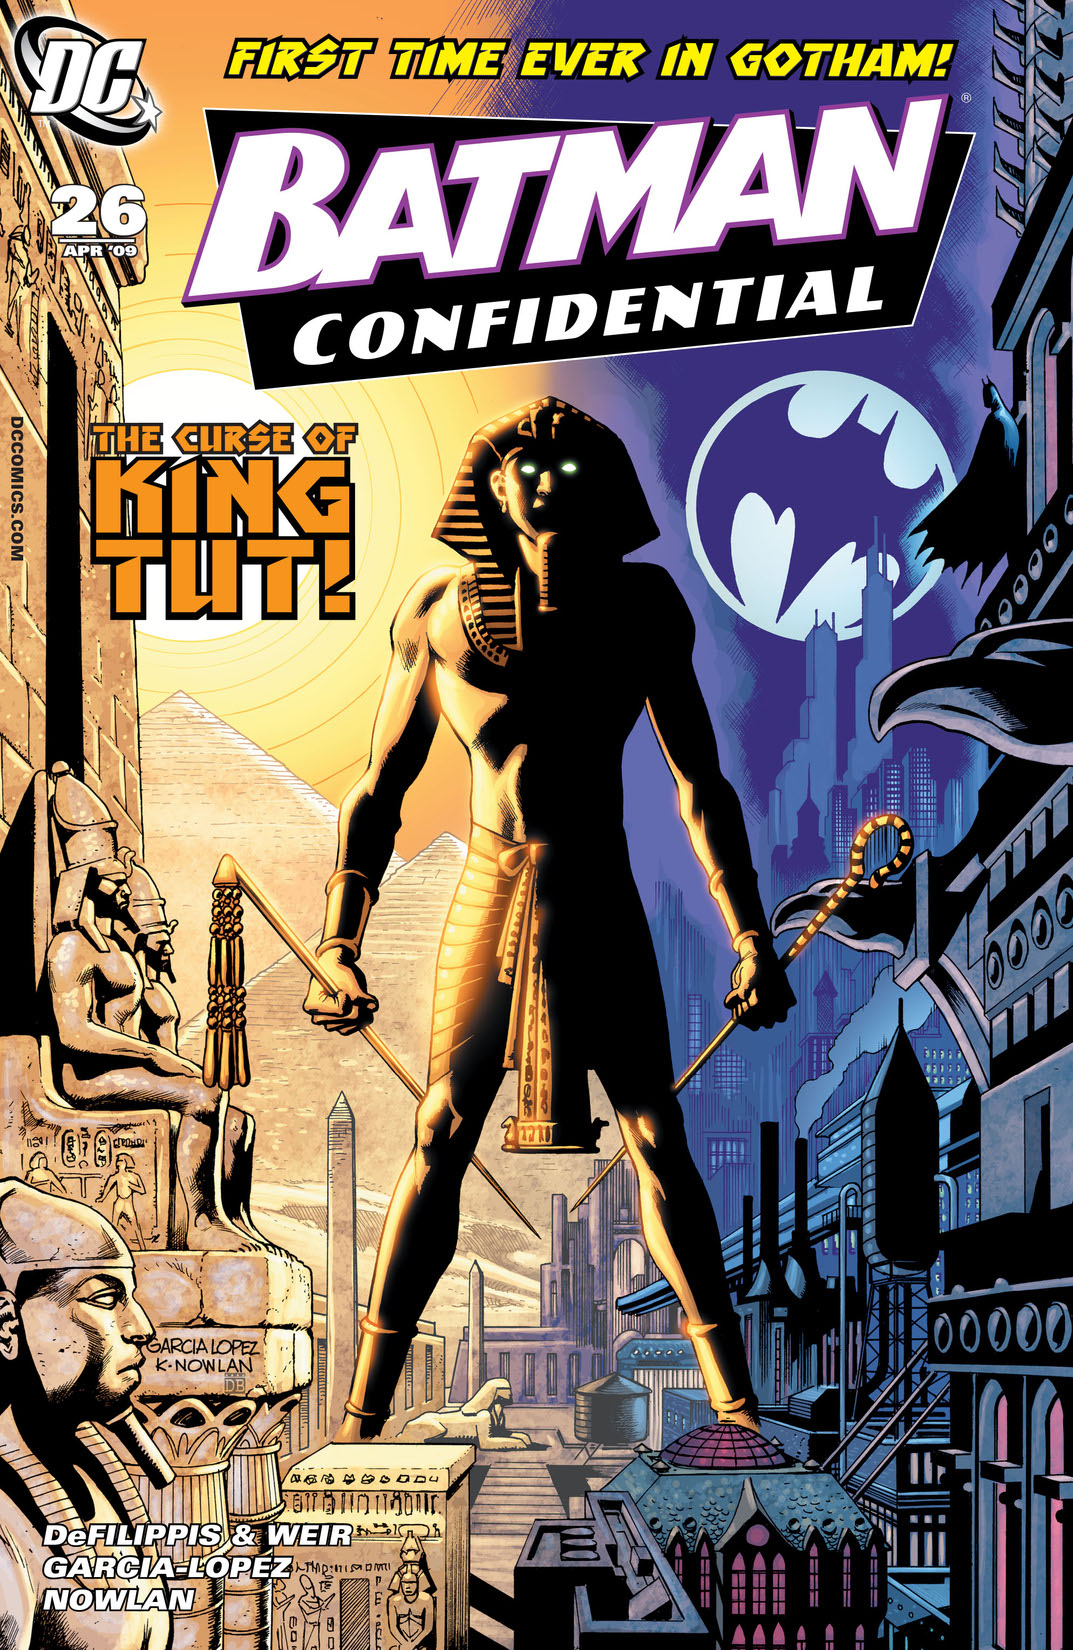 Batman Confidential #26 preview images